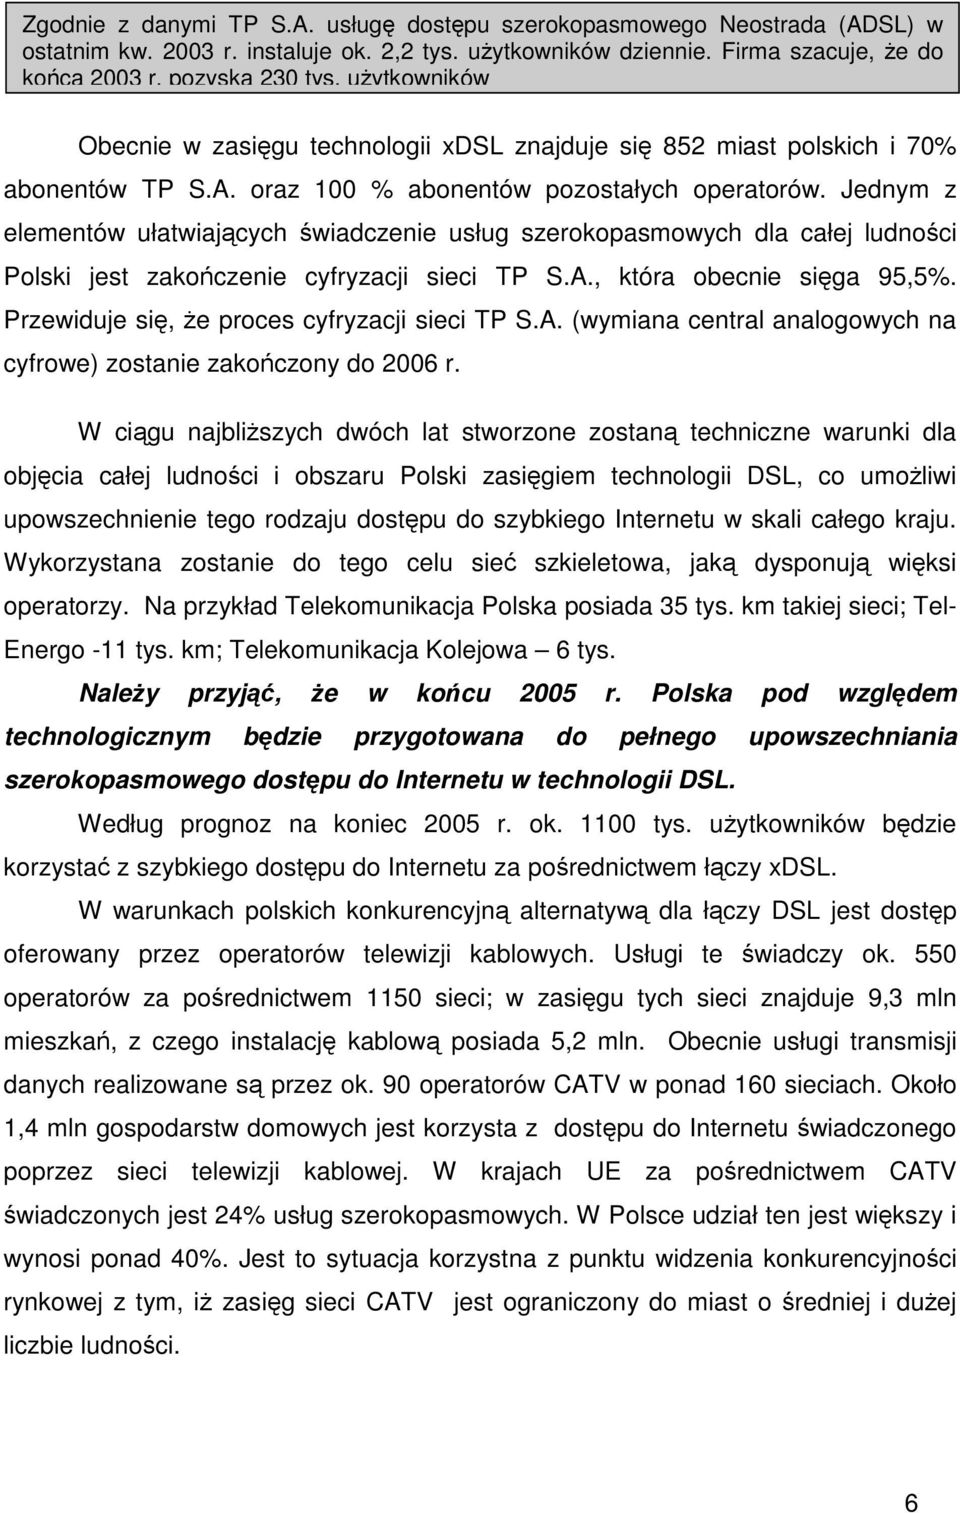 Jednym z elementów ułatwiajcych wiadczenie usług szerokopasmowych dla całej ludnoci Polski jest zakoczenie cyfryzacji sieci TP S.A., która obecnie siga 95,5%.